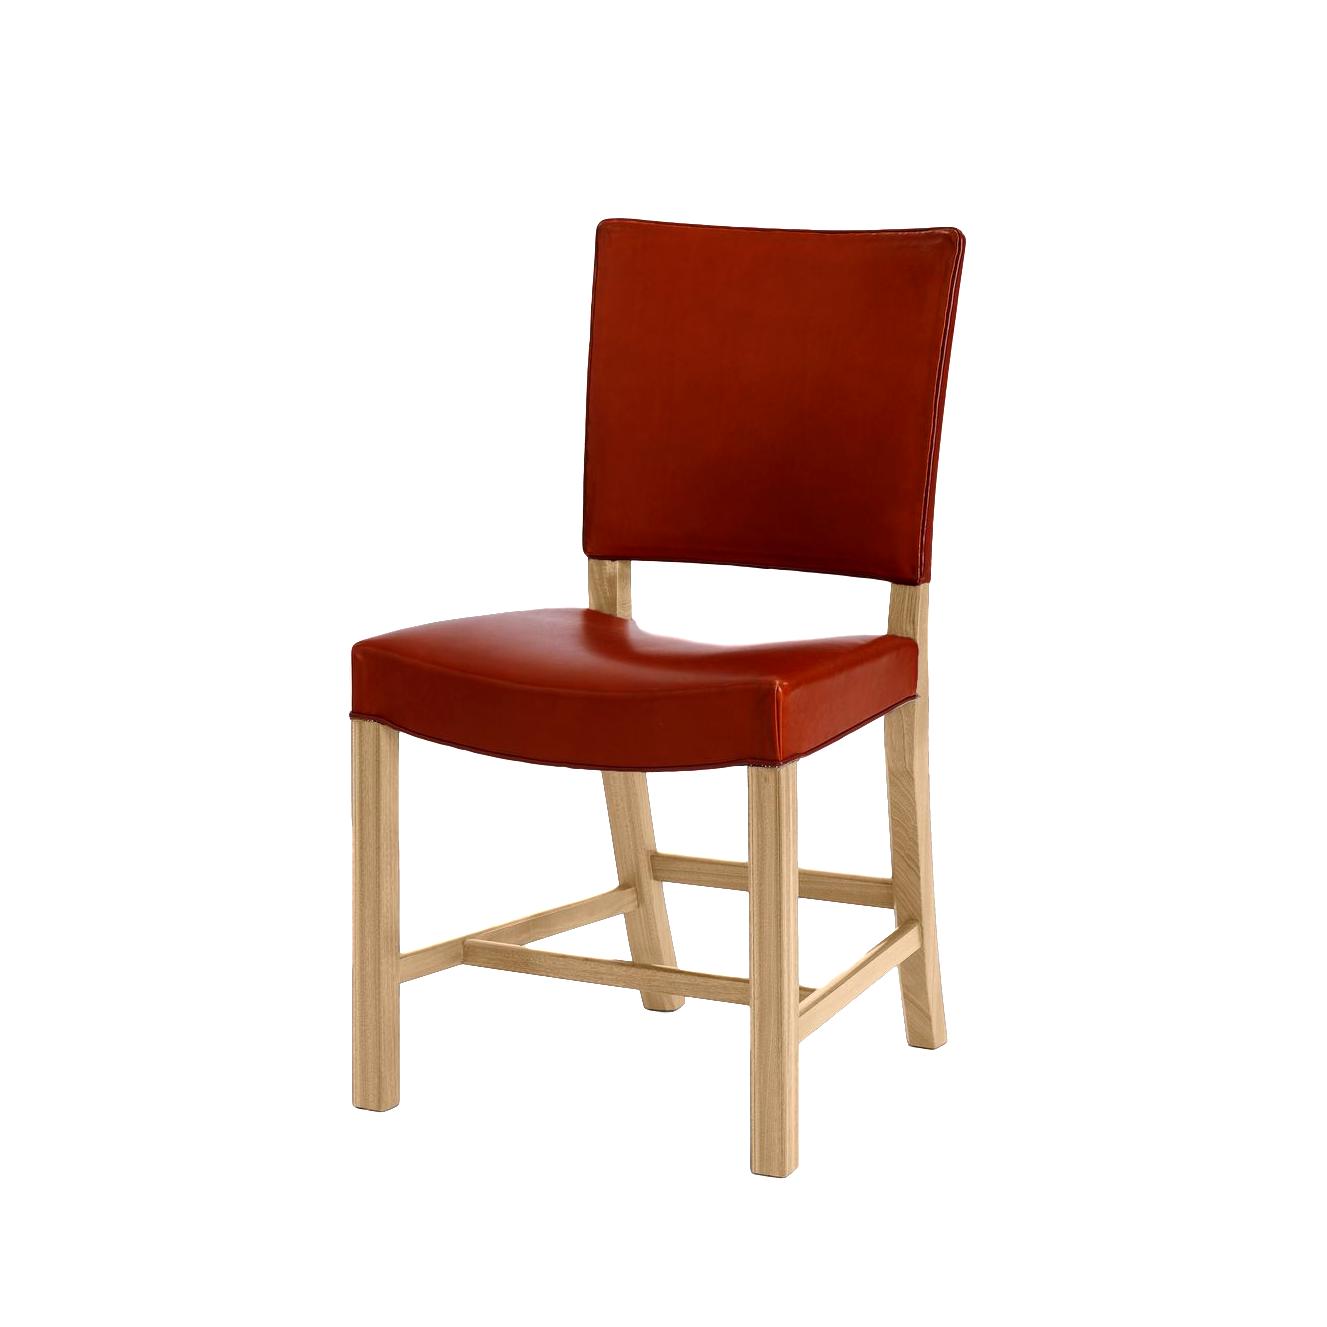 Carl Hansen KK39490 Pieni punainen tuoli, tammilla peitollinen/musta nahka